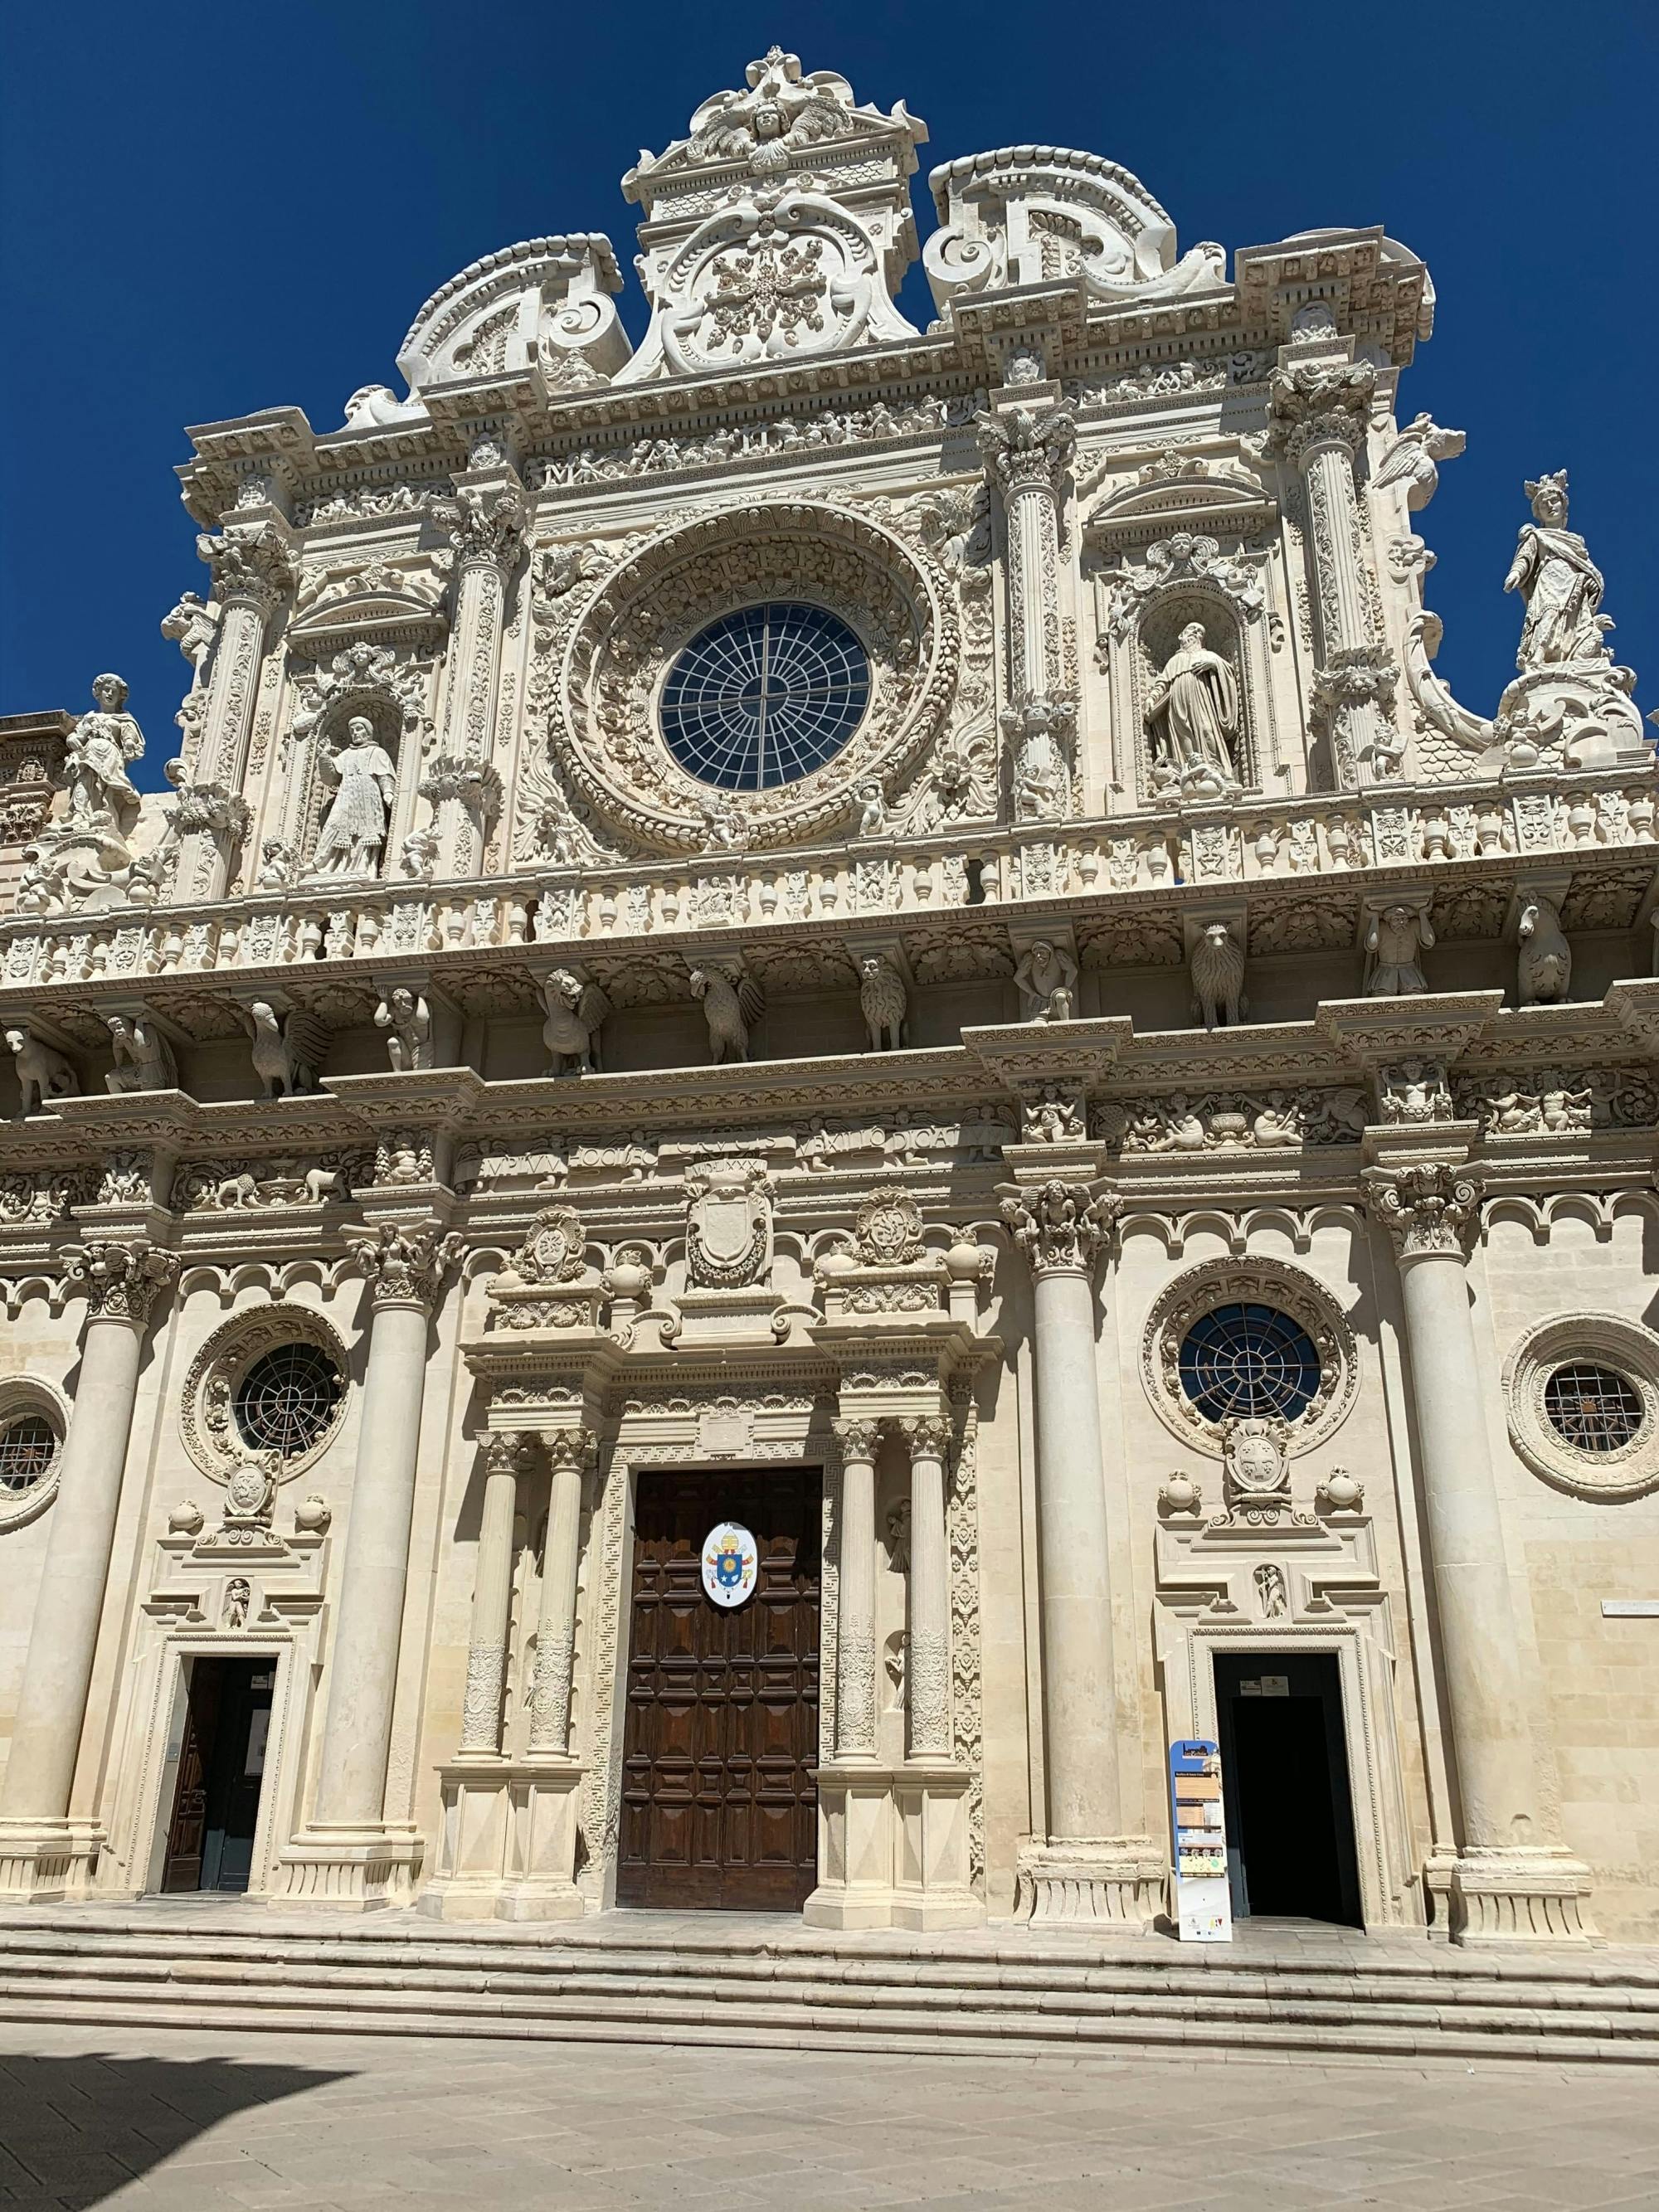 Full Day Private Tour of Lecce and Otranto